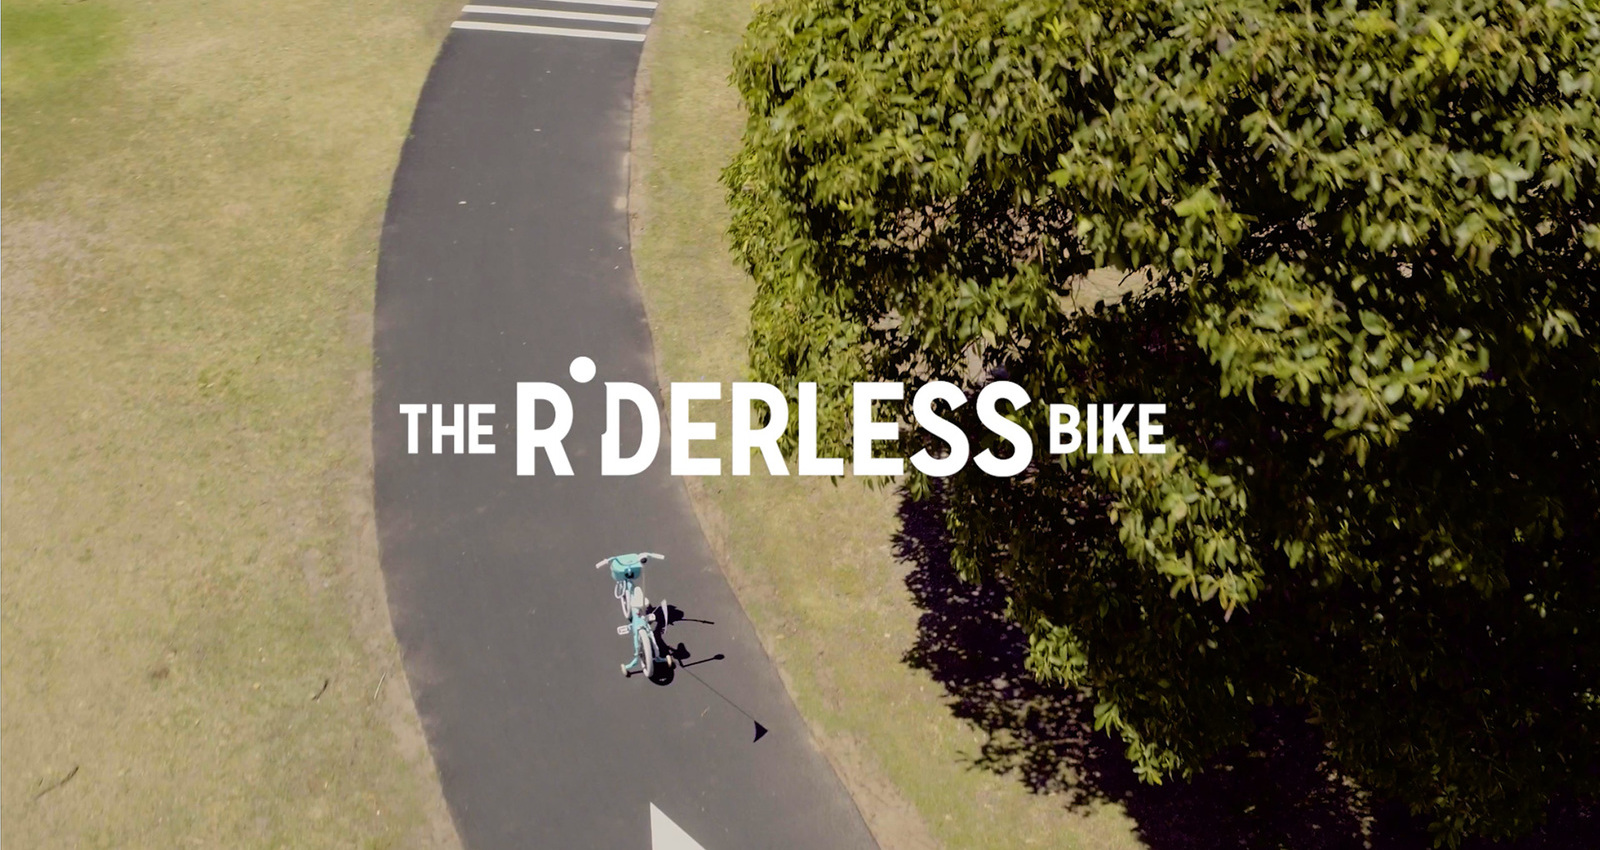 The Riderless Bike